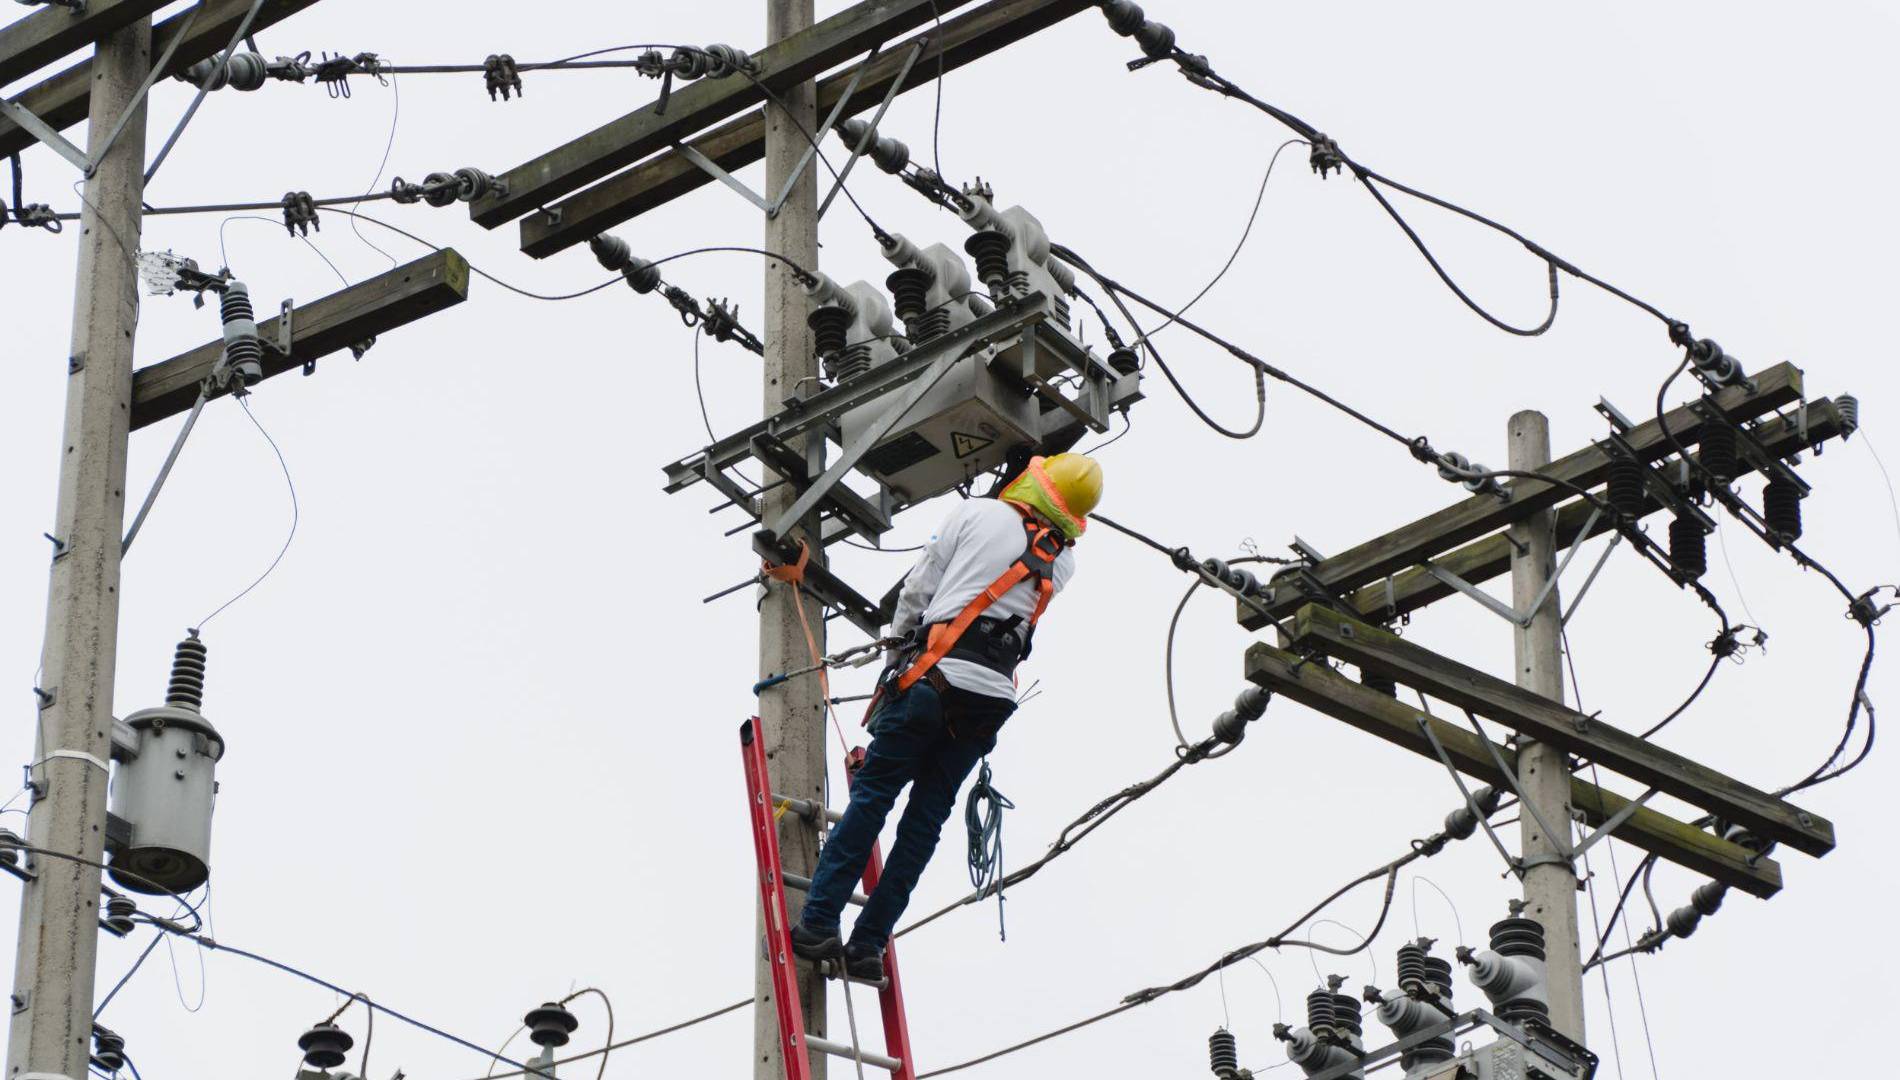 $!Muchos de los barrios y colonias de San Pedro Sula, sobre todo en sectores conflictivos, hurtan servicios como energía eléctrica. En otros sitios se reportan constantes racionamientos por la sobrecarga.